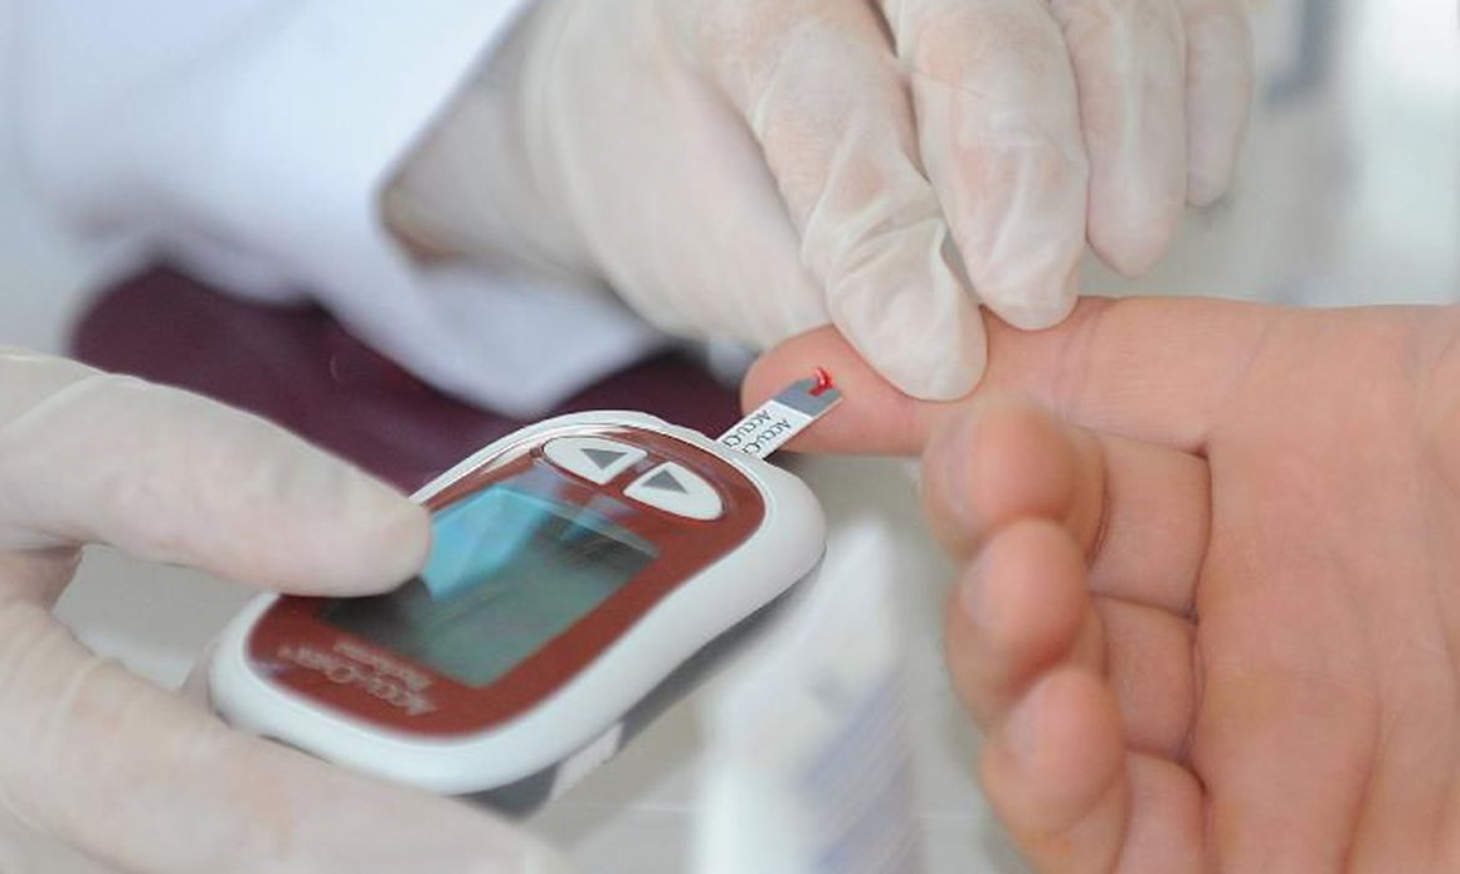 Pandemia impacta vida de pessoas com diabetes no Brasil, diz estudo | Jornal da Orla